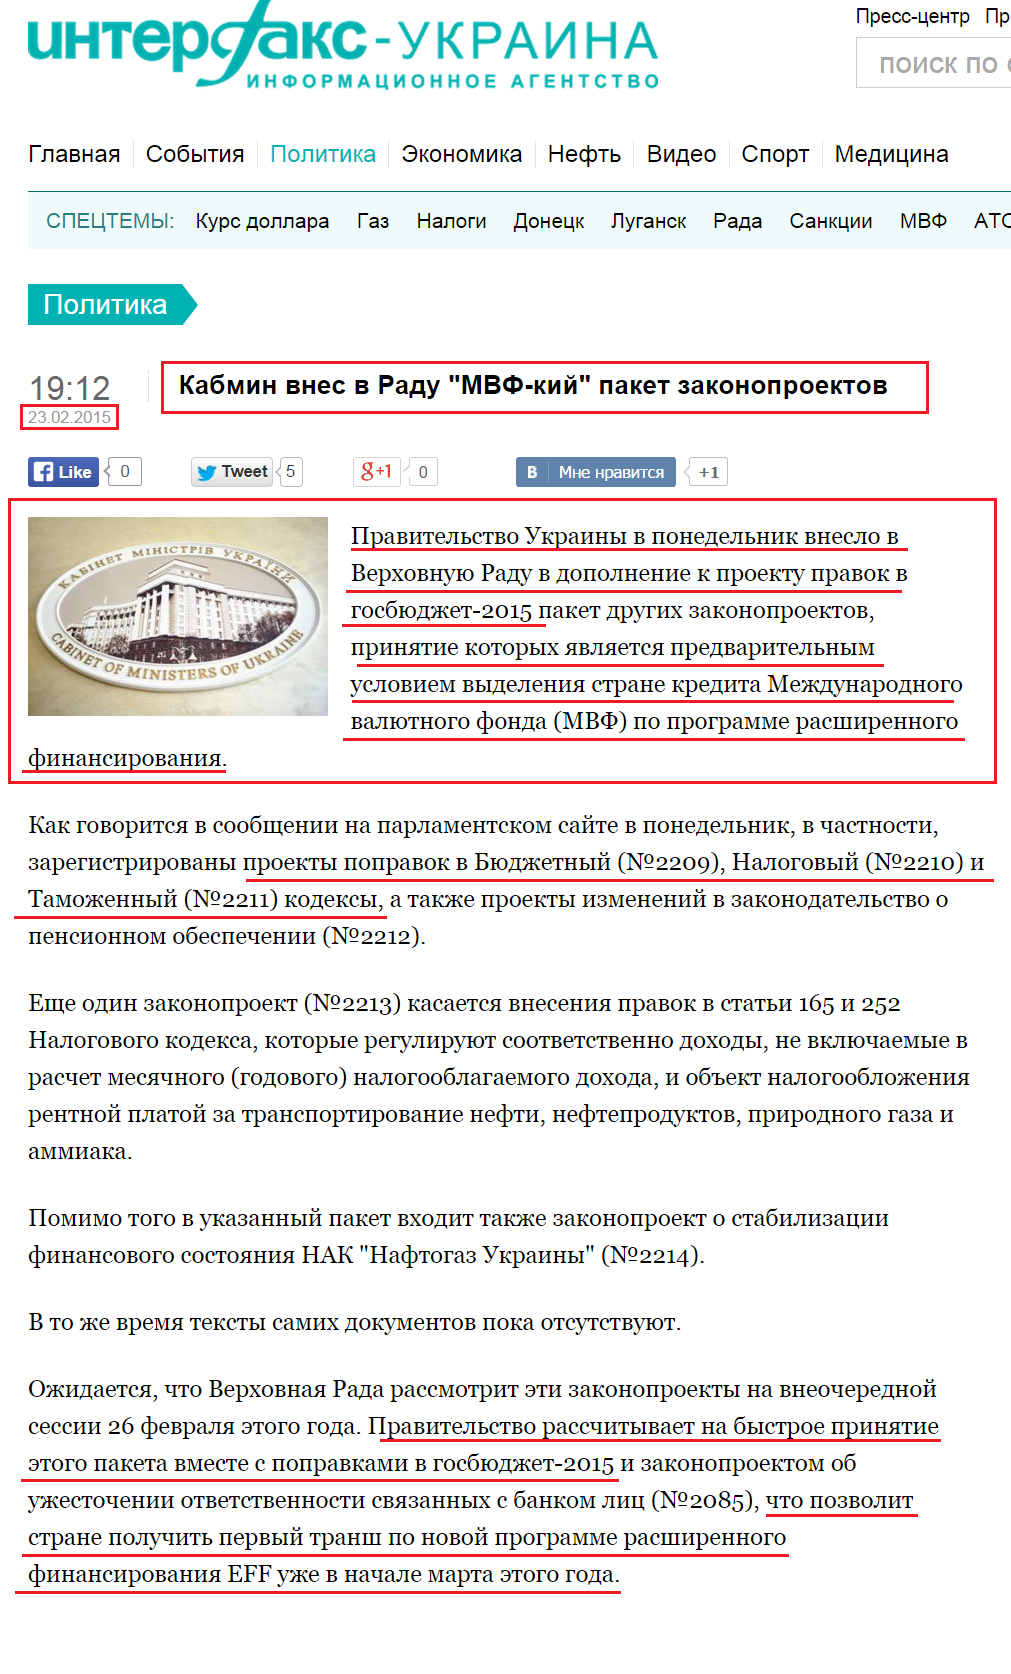 http://interfax.com.ua/news/political/252079.html